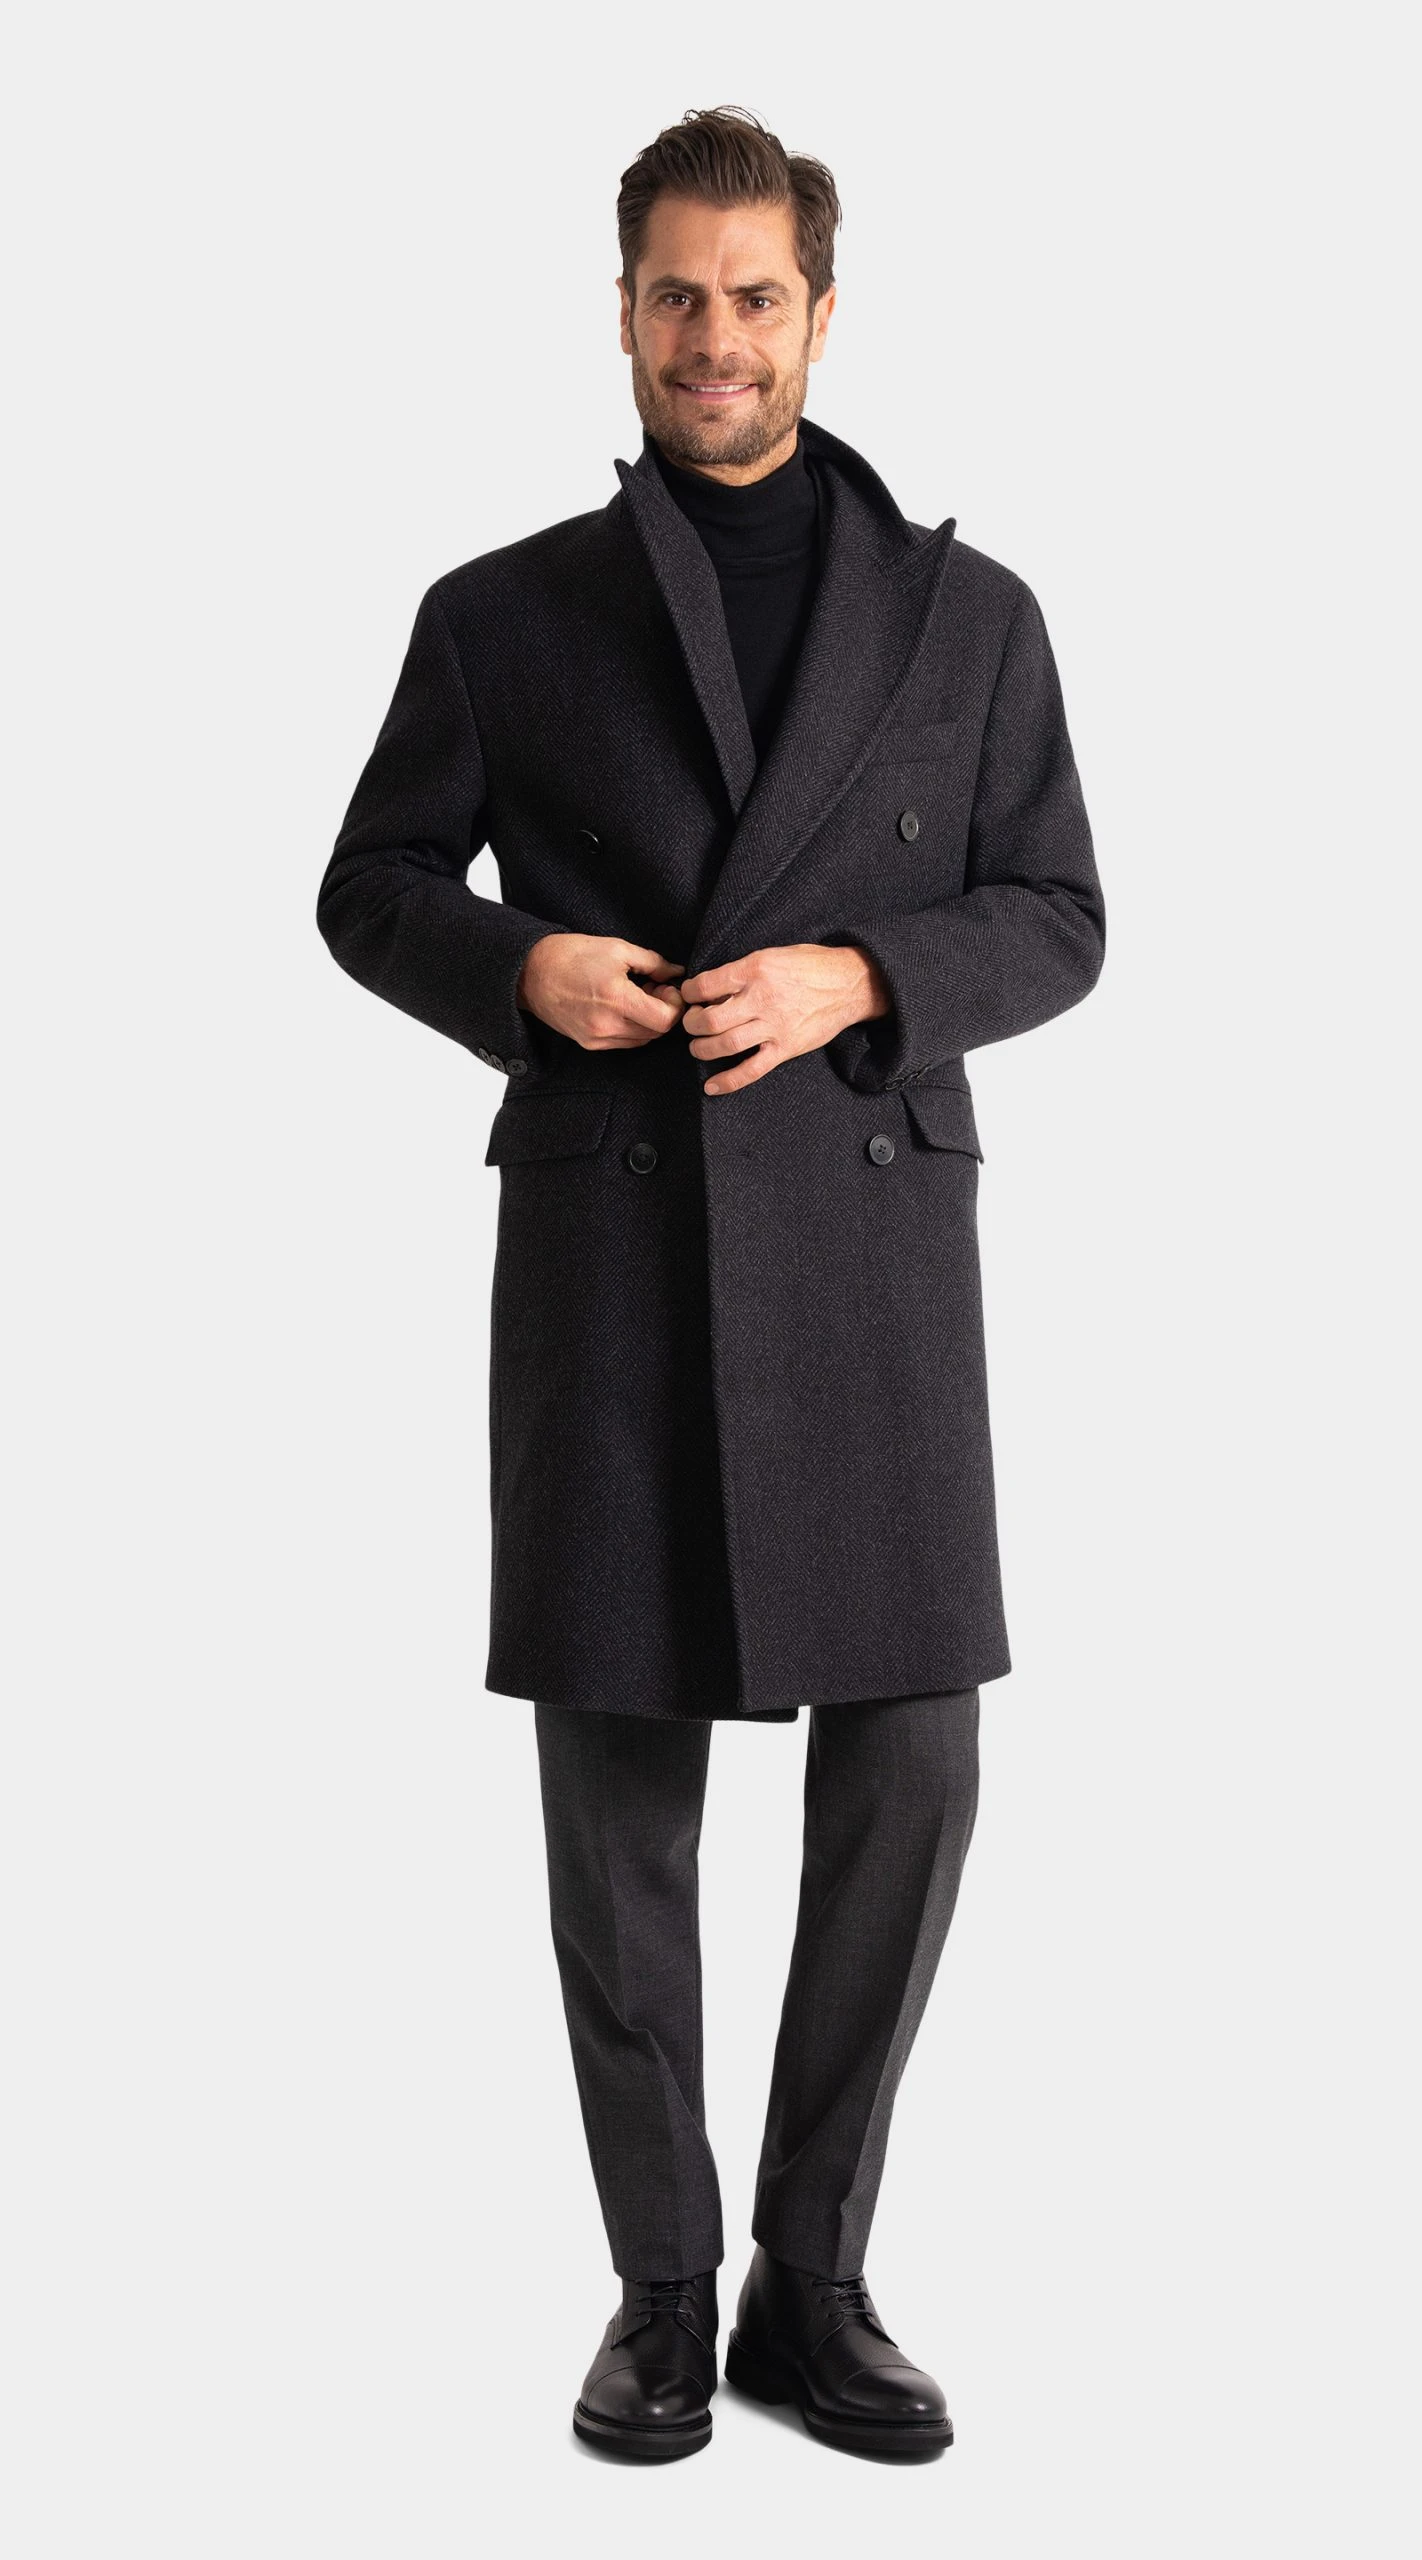 Charcoal Wool and Cashmere Herringbone Overcoat custom made by mond